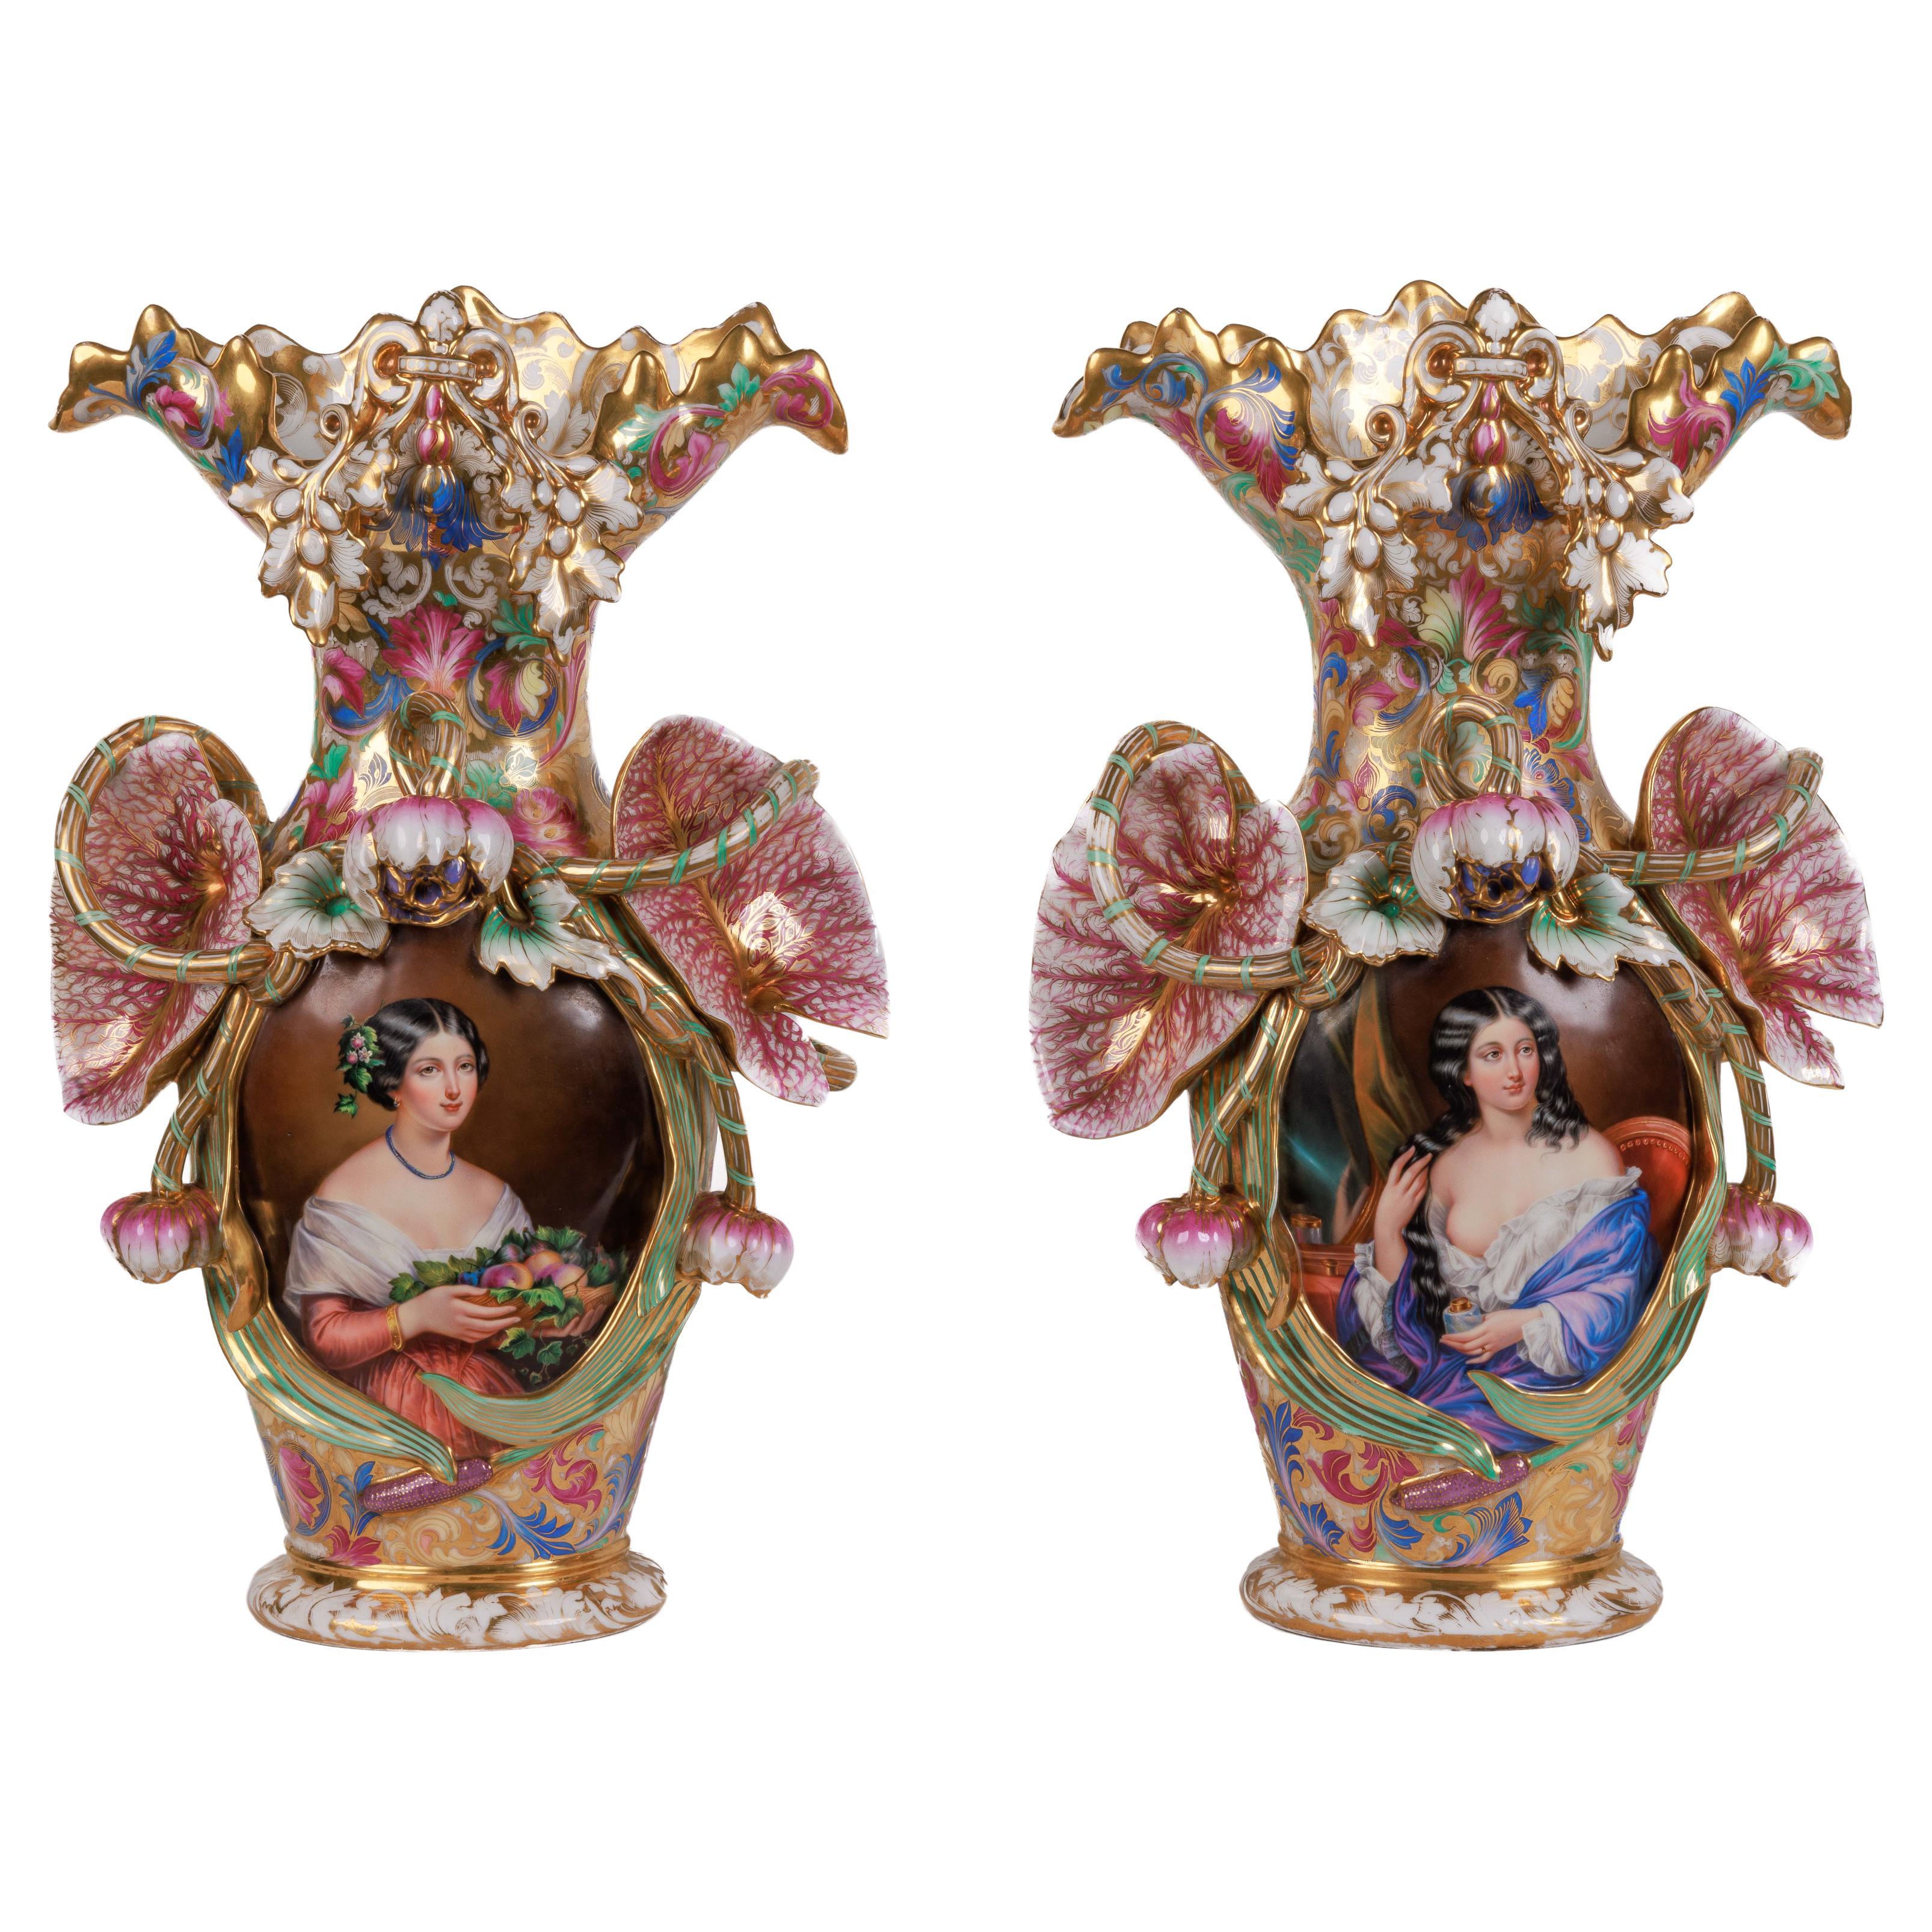 Paire monumentale et magistrale de vases en porcelaine de Paris peints à la main